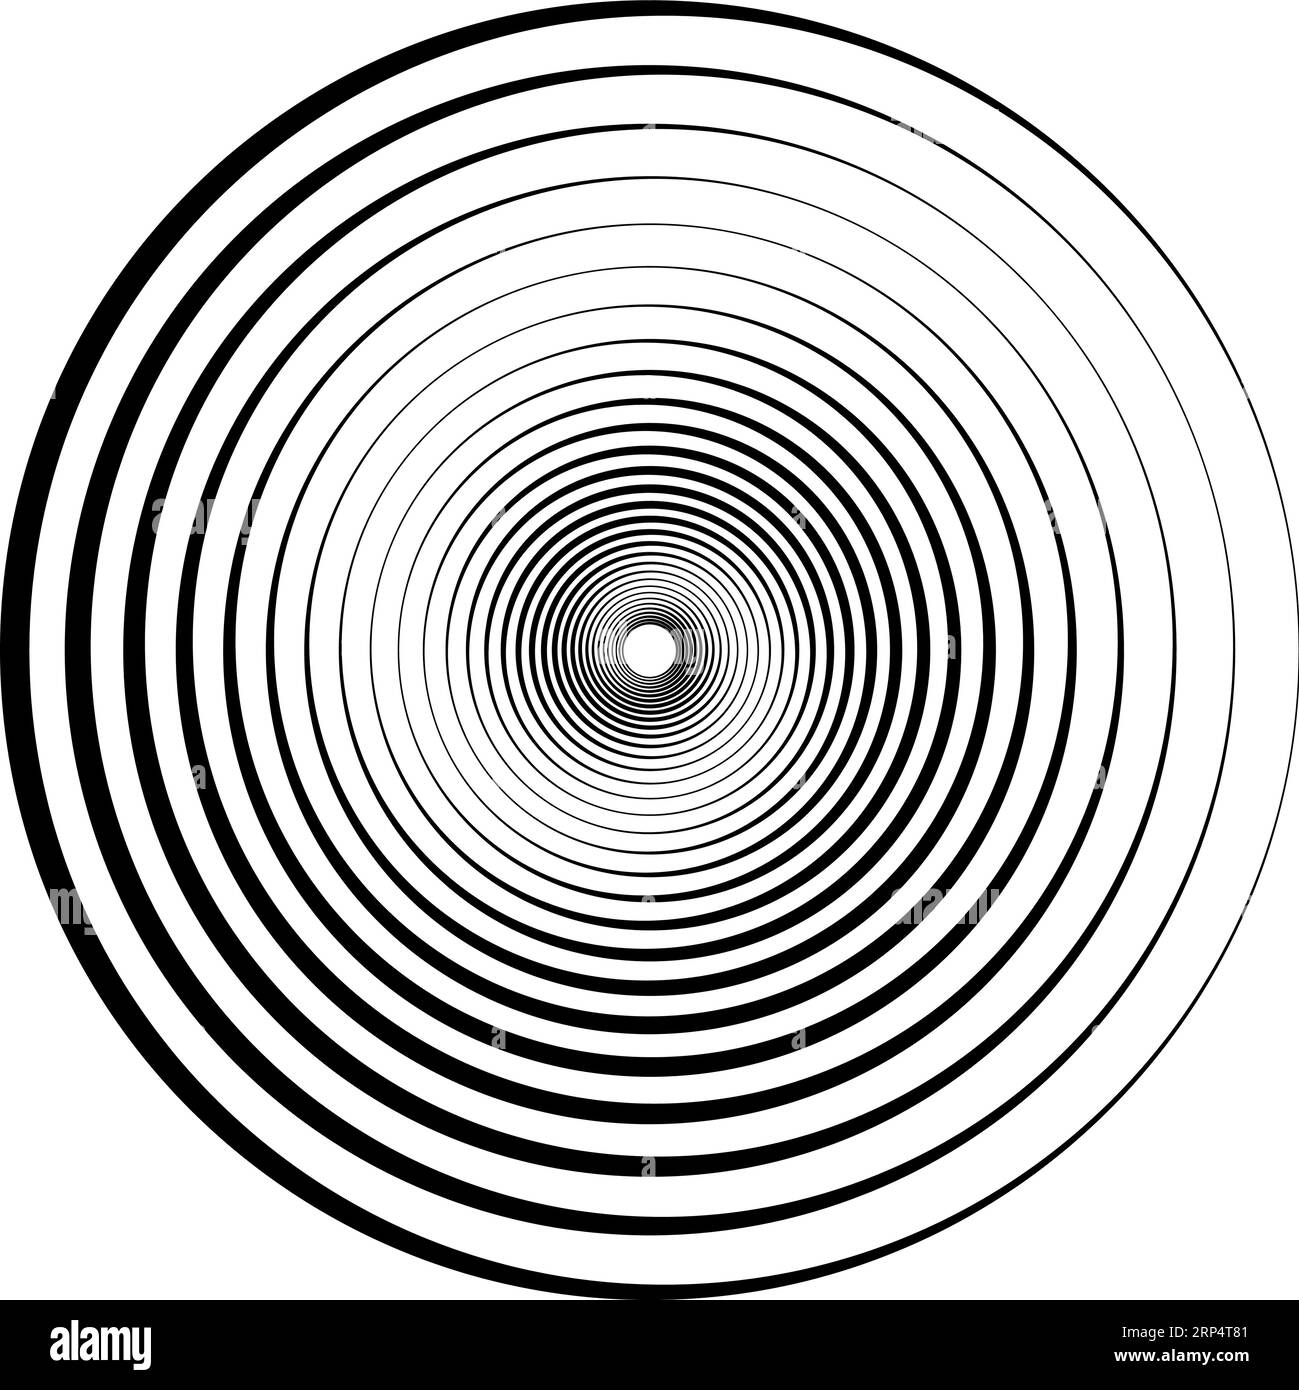 Spirale geometrica astratta, increspature circolari, linee concentriche effetto vortice Illustrazione Vettoriale